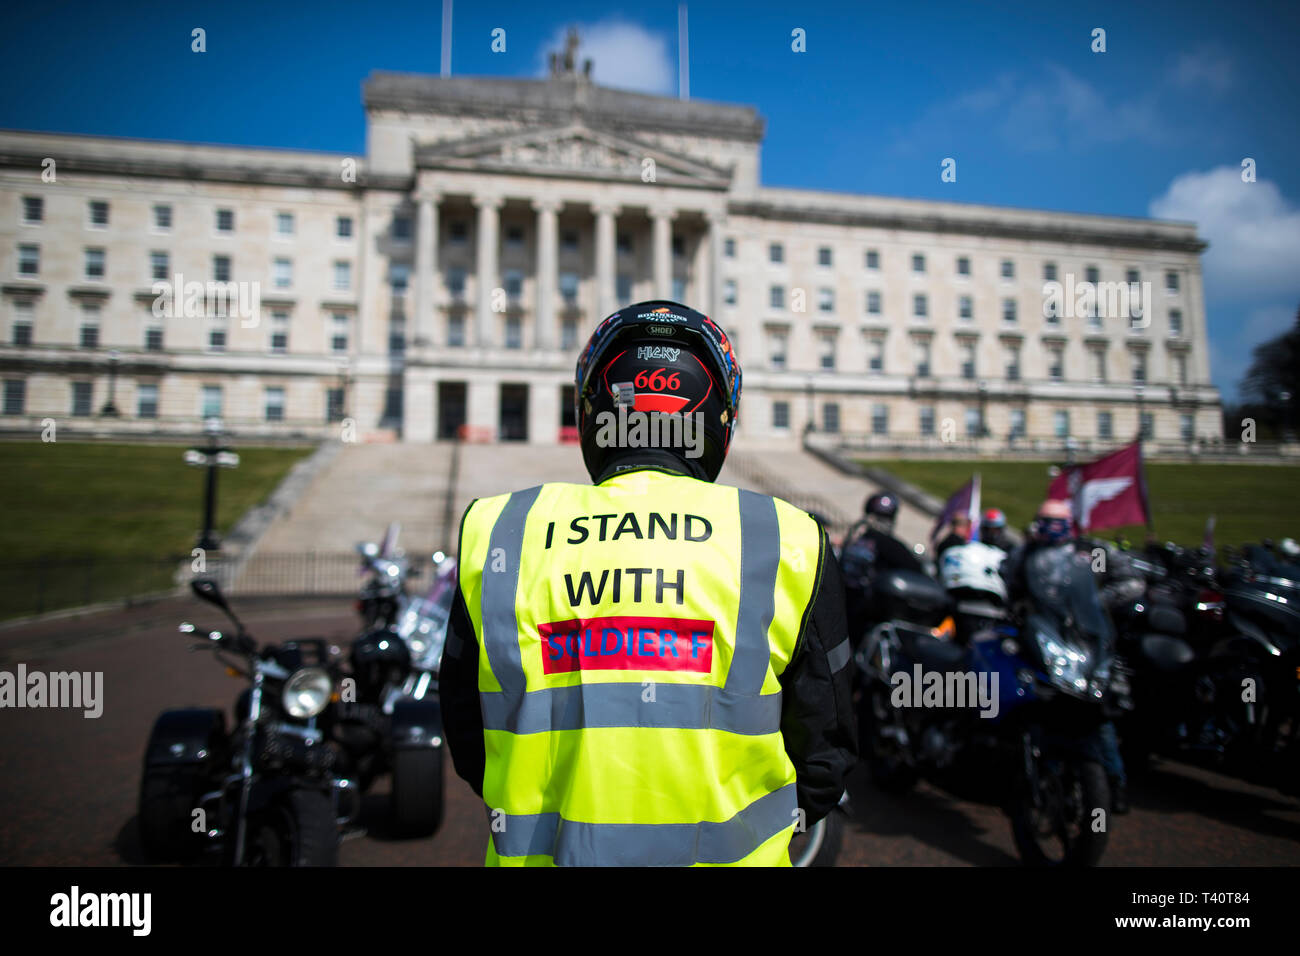 Les motocyclistes au bâtiments Stormont à Belfast prendre part à l'opération Rolling Thunder ride protestation à l'appui de soldat F, qui fait face à des poursuites sur le Dimanche sanglant. Banque D'Images